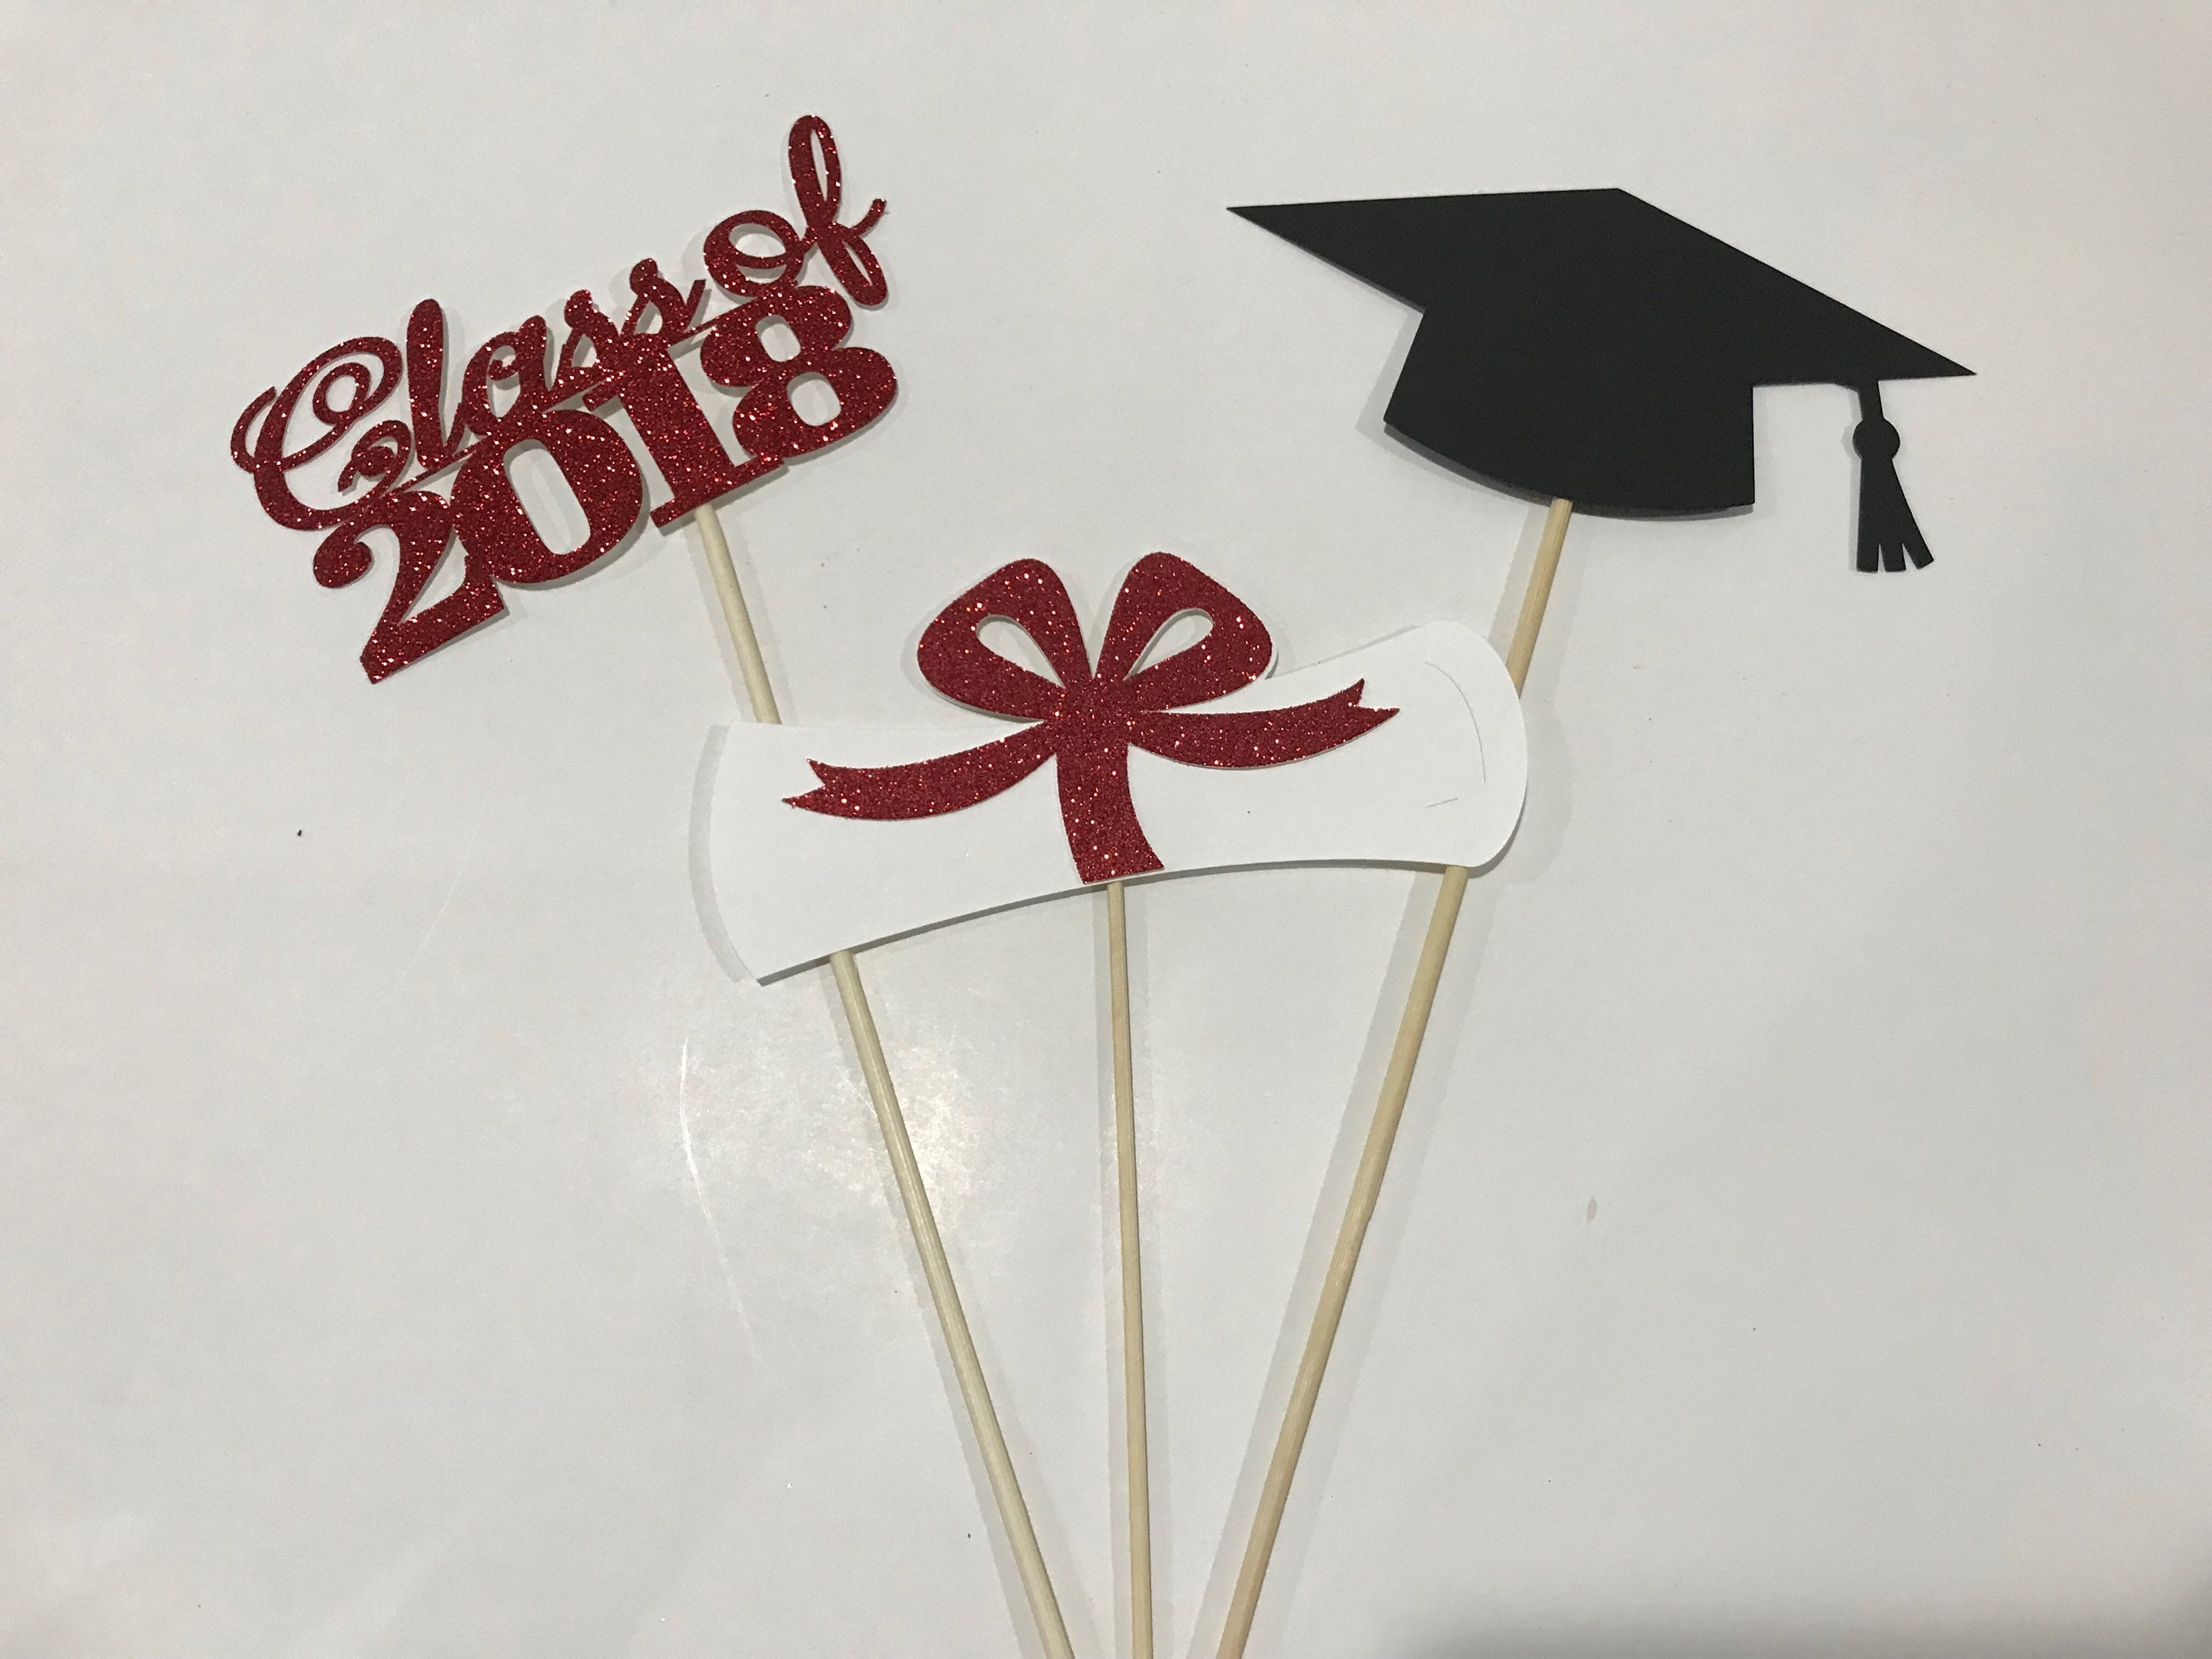 Graduation party decorations 2021 Graduation Centerpiece | Etsy